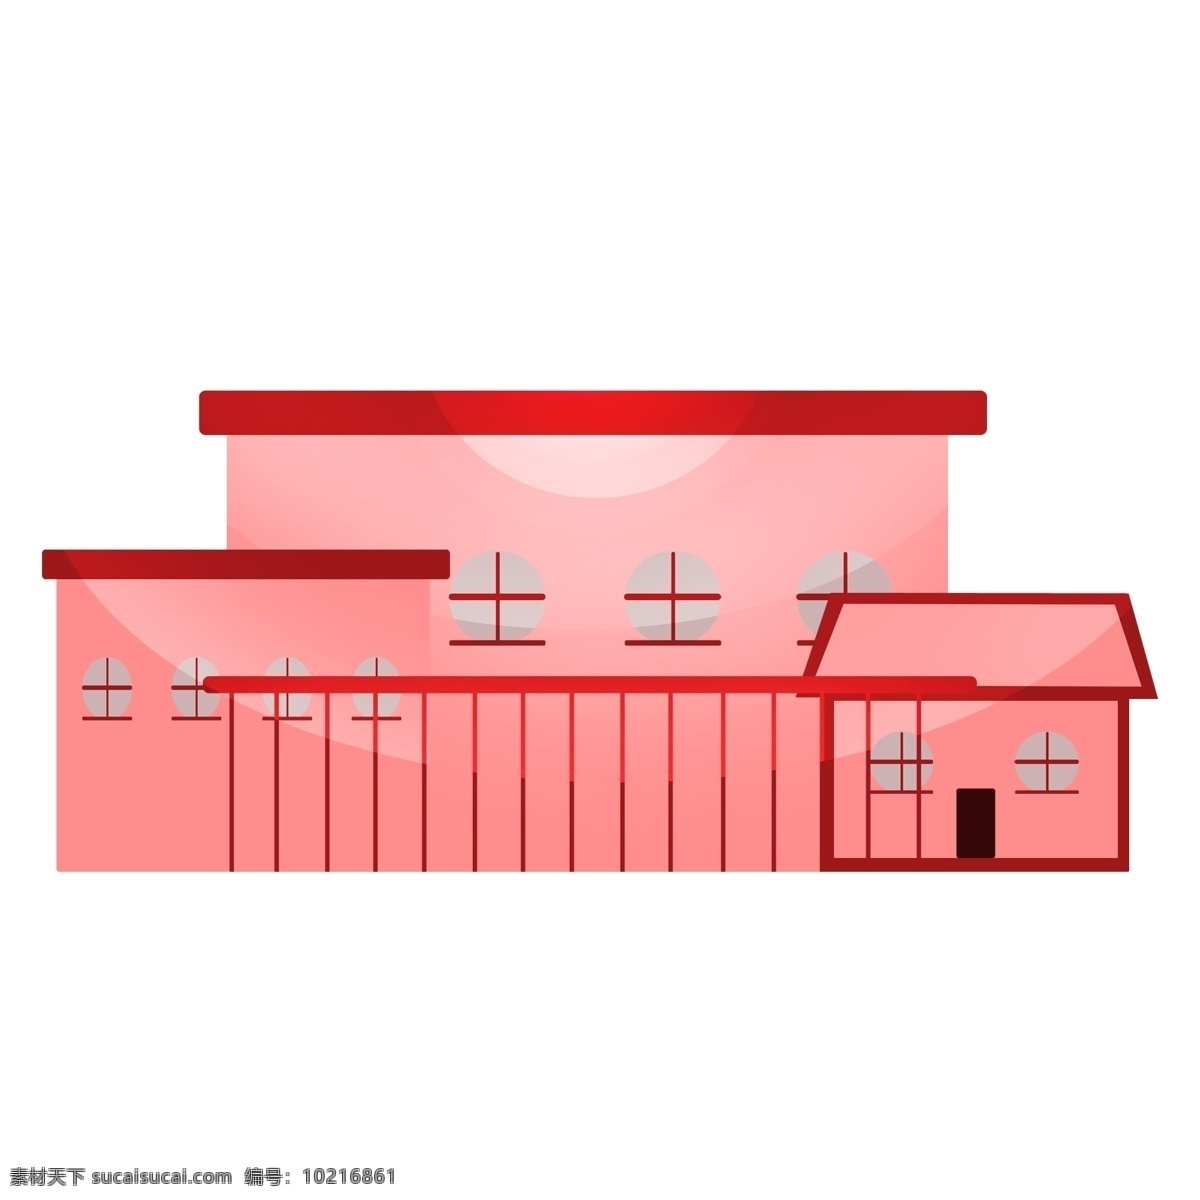 红色 房子 建筑物 插画 建筑 栅栏 平顶房子 红色房子 建筑物插画 楼房建筑 房子插图